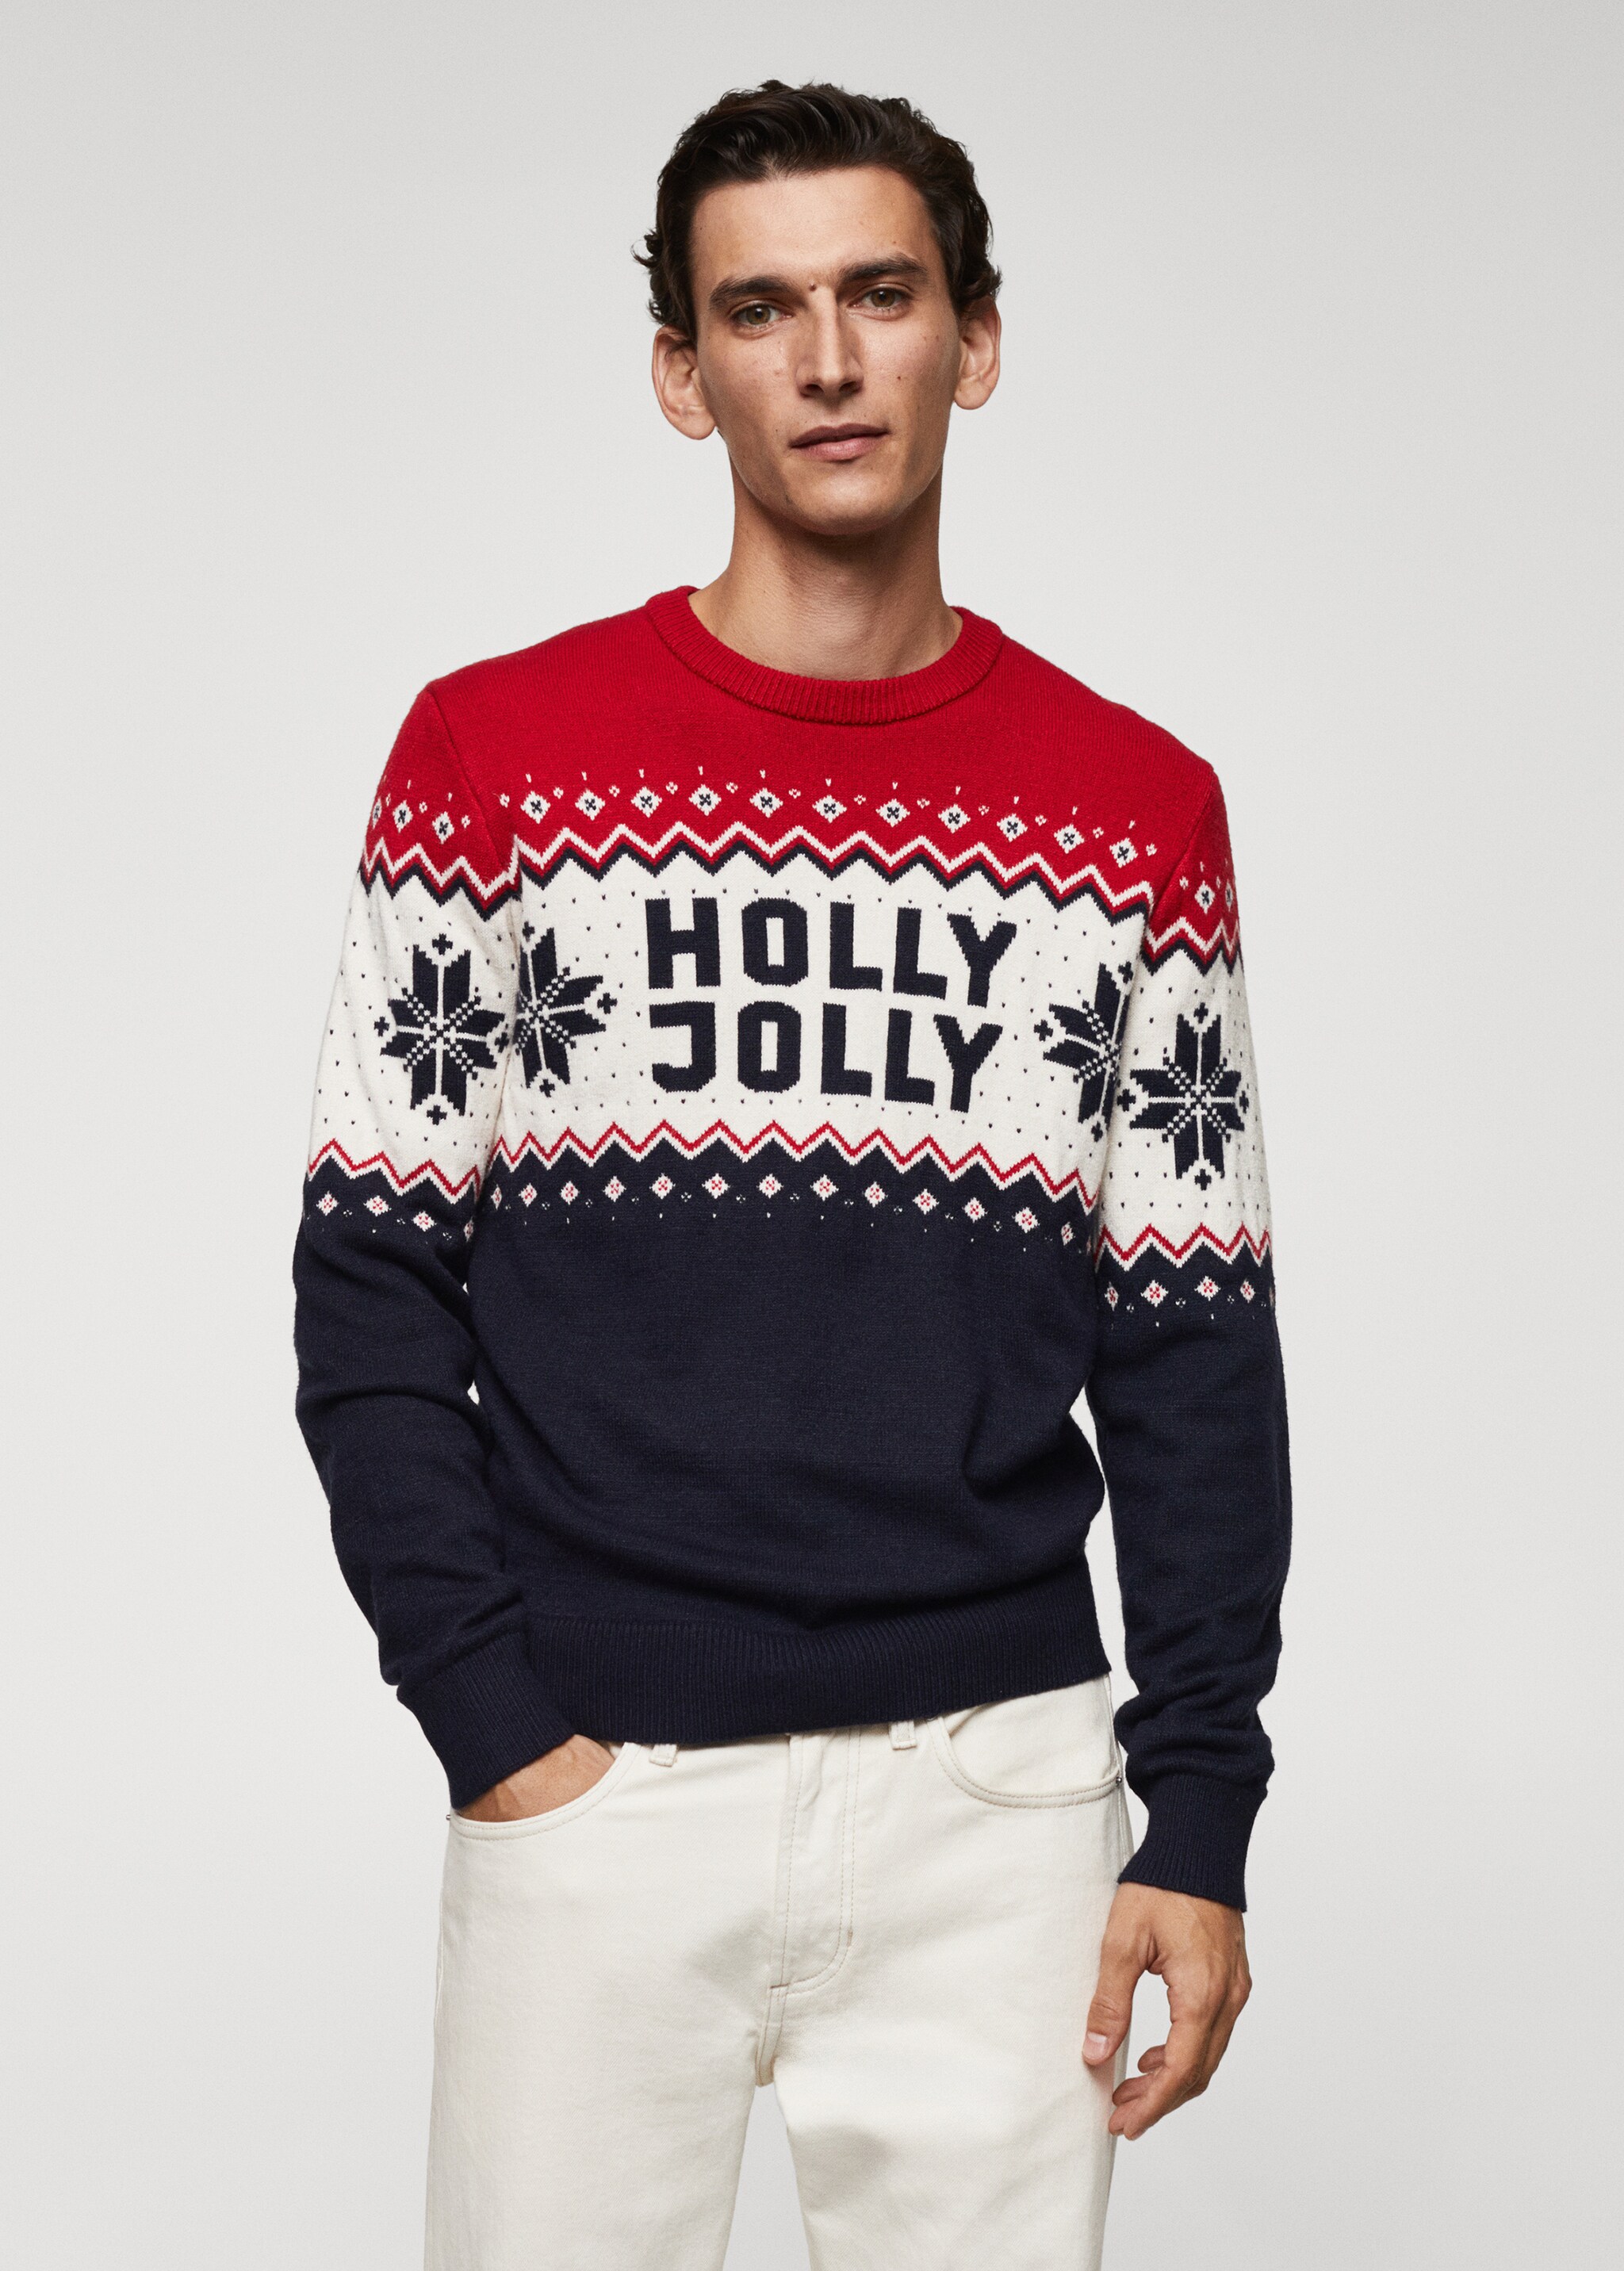 Pullover mit weihnachtlichem Jacquardmuster - Mittlere Ansicht